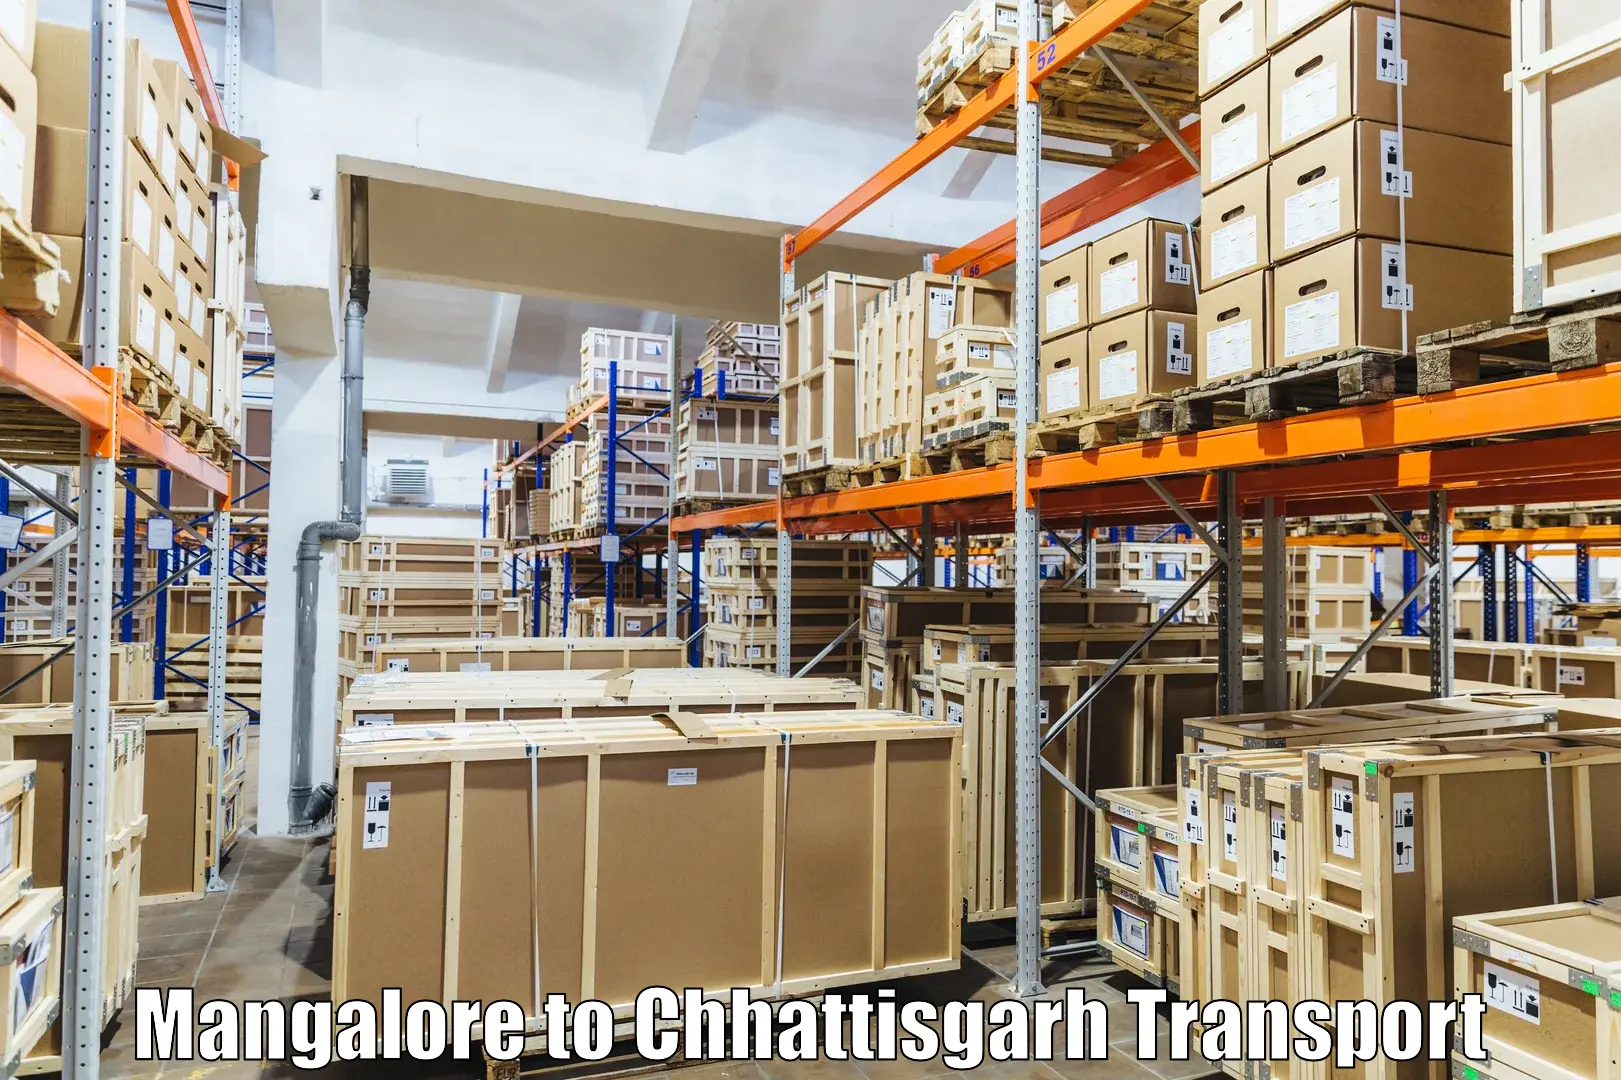 Delivery service Mangalore to Patna Chhattisgarh